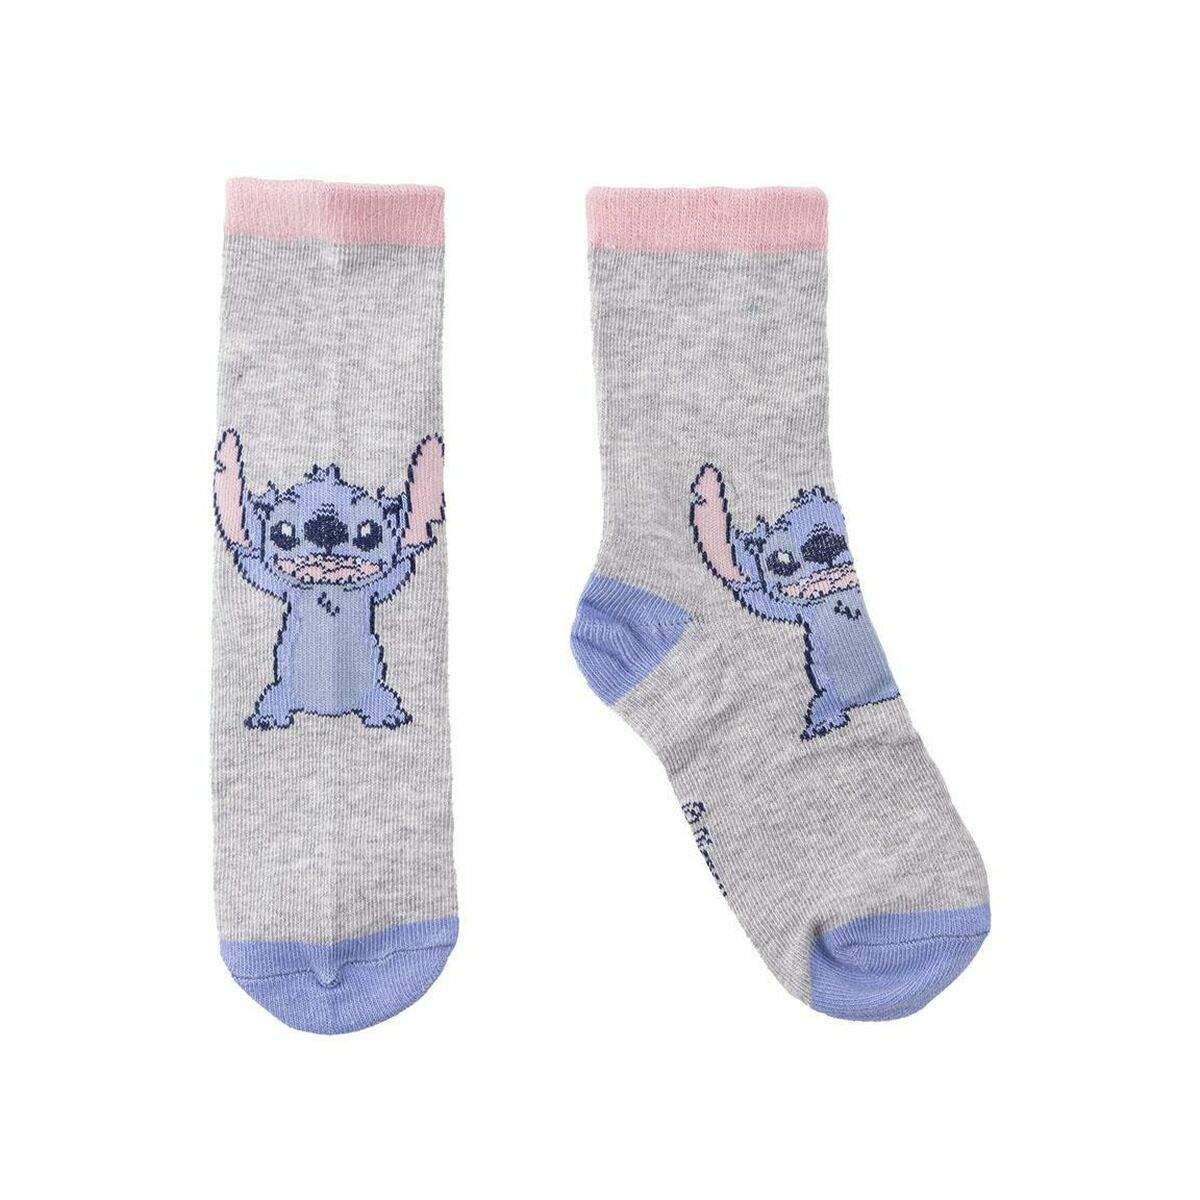 Socks Stitch 5 Pieces